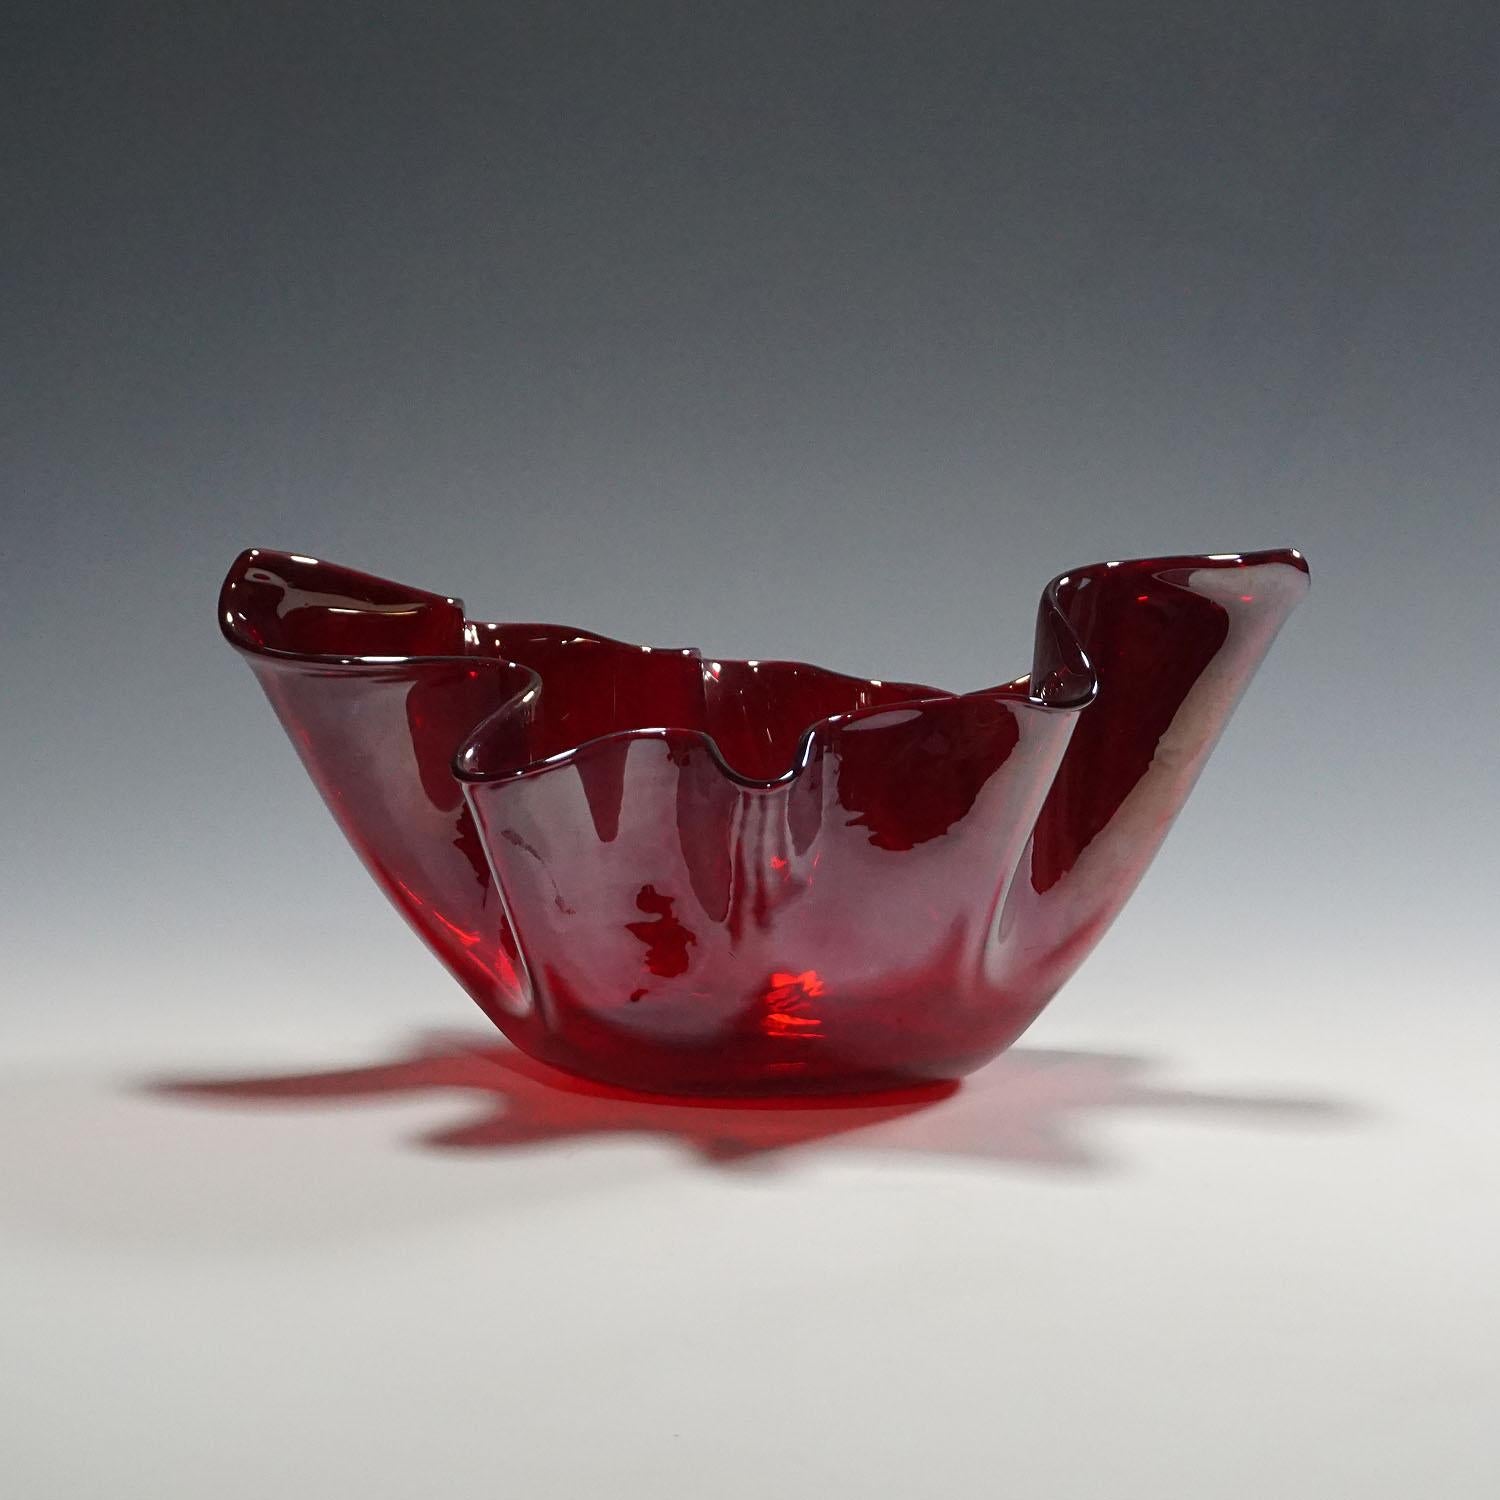 Große Fazzoletto-Vase (Taschentuch) aus transparentem rotem Glas. Hergestellt ca. 1950 von Venini, Venedig, nach einem Entwurf von Fulvio Bianconi. Auf dem Sockel mit geätzter Signatur 